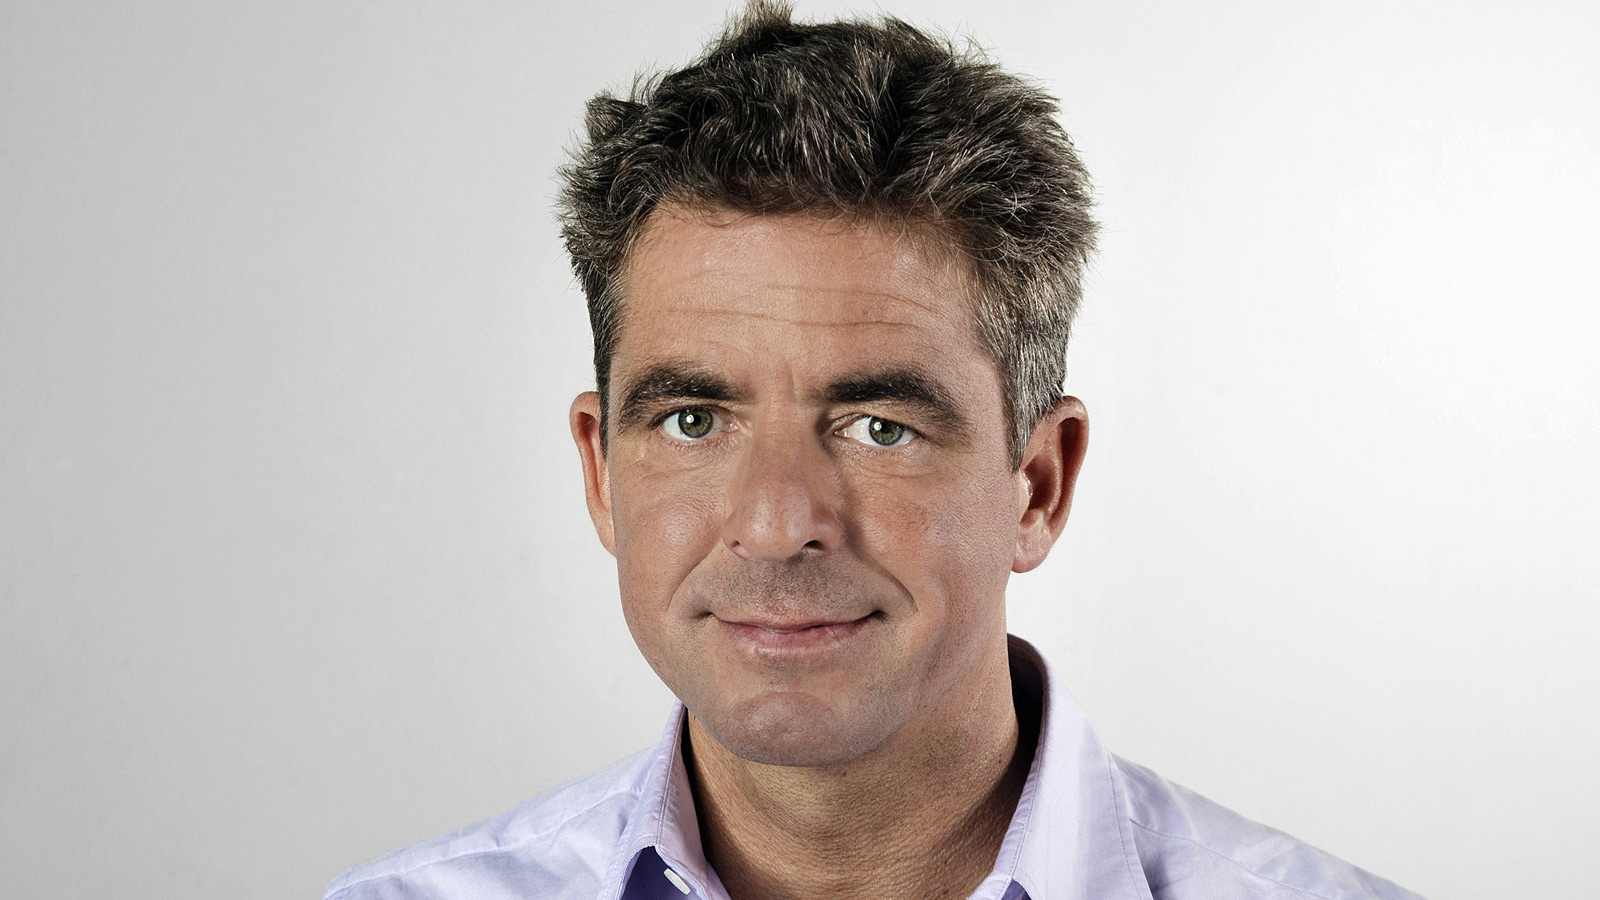 Sportschaukommentator Jürgen Bergener